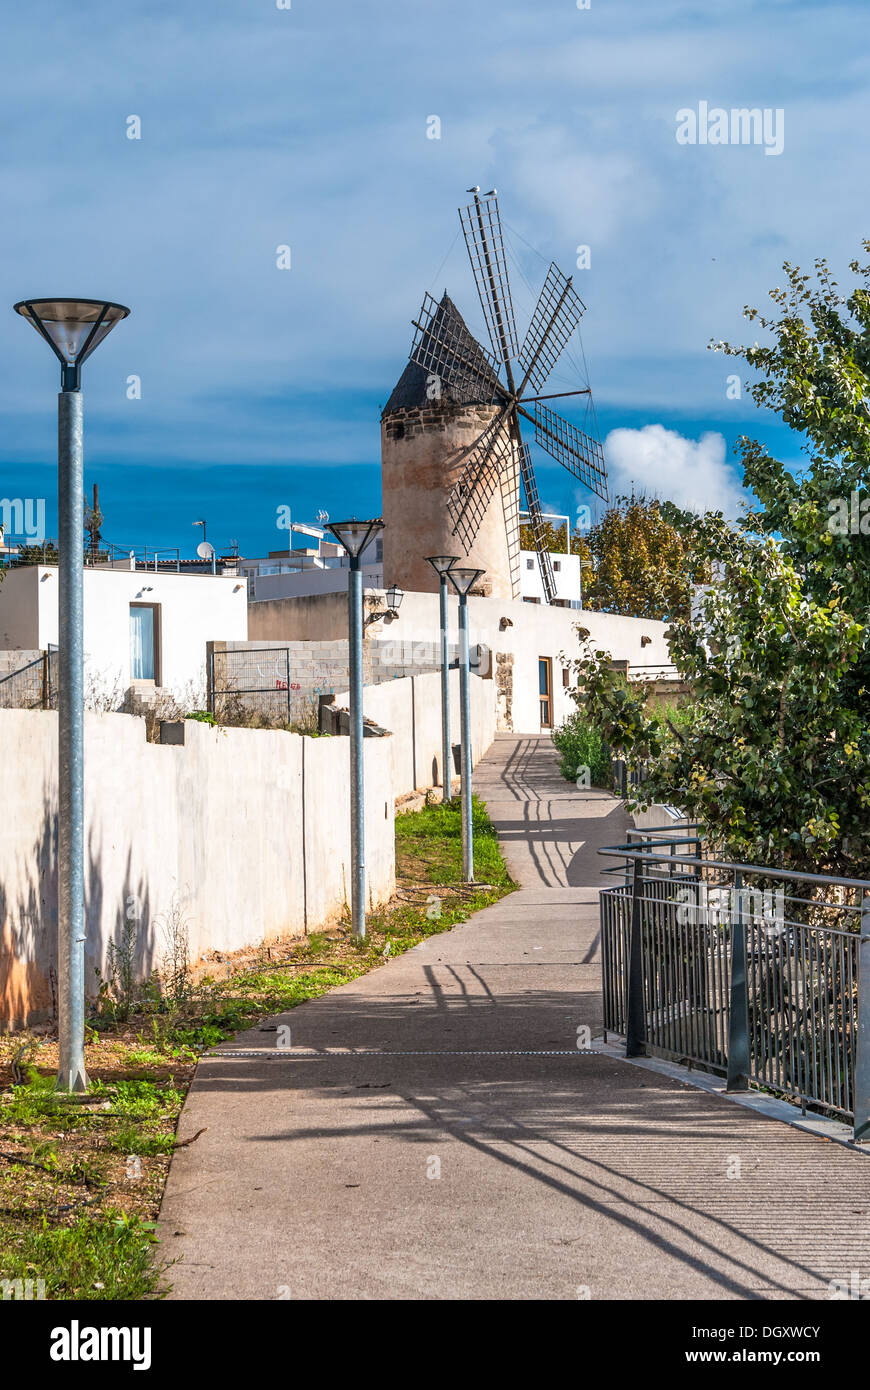 La imagen muestra un molino tradicional en las calles de la ciudad de Palma de Mallorca, España Foto de stock